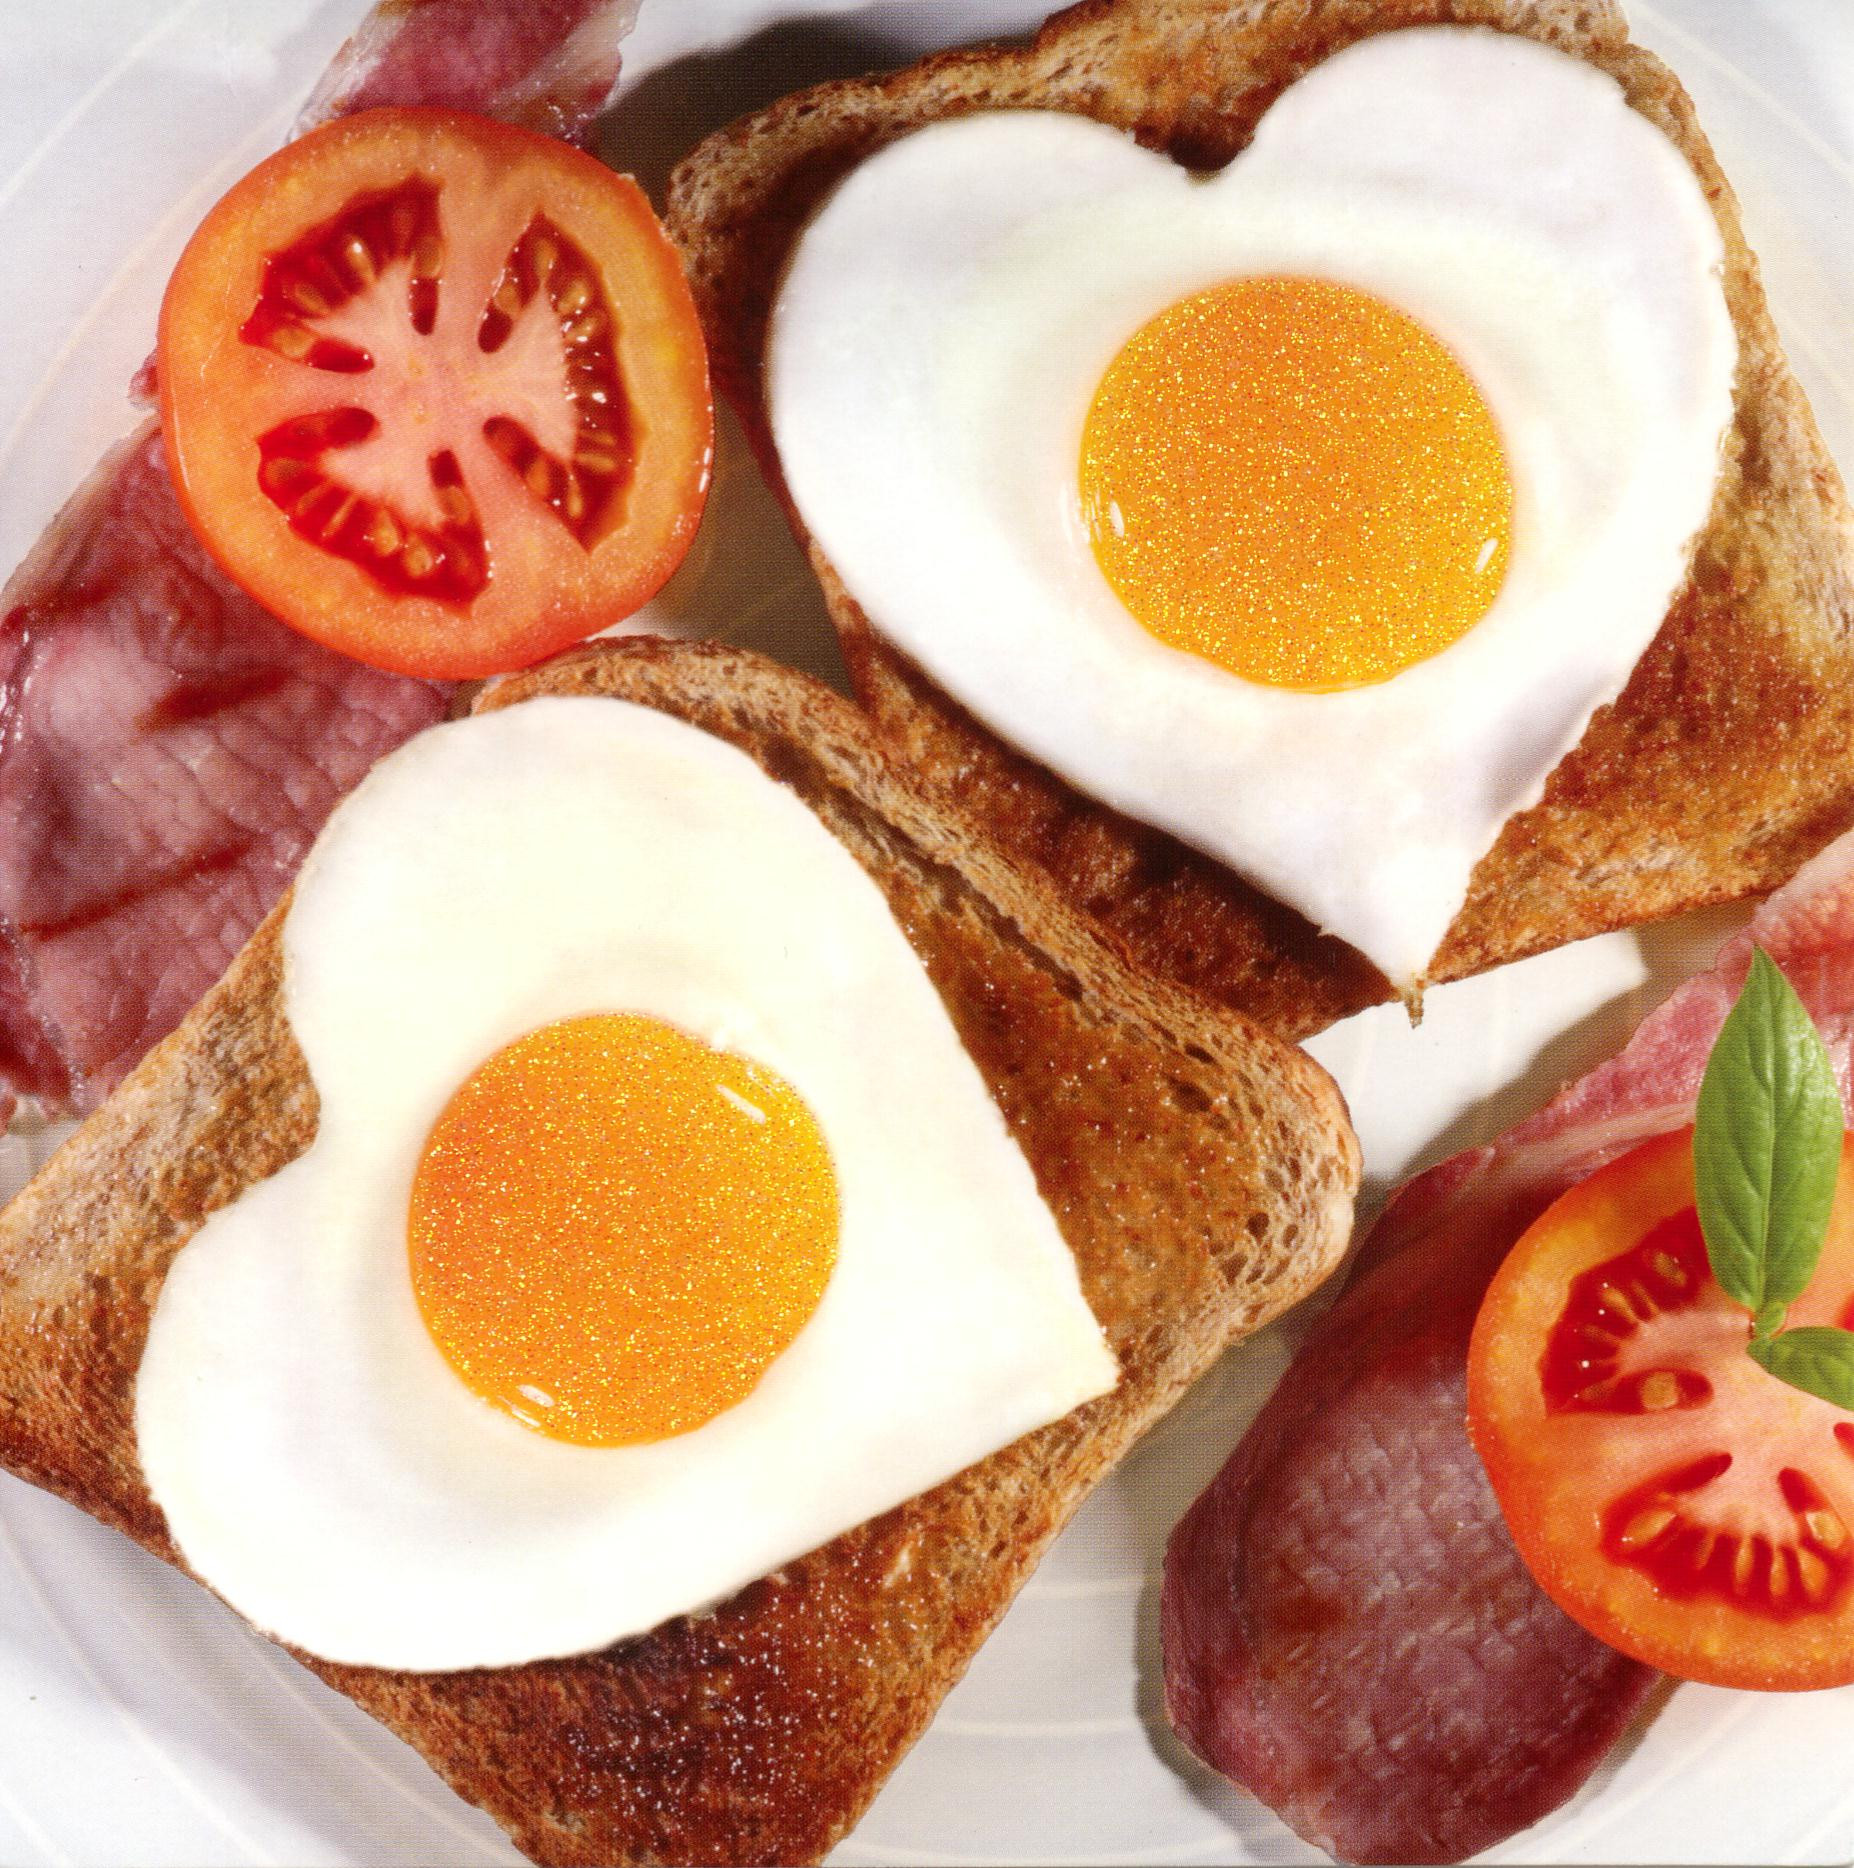 Heart Healthy Breakfast Foods
 Heart Healthy Breakfast Ideas By tastymeals